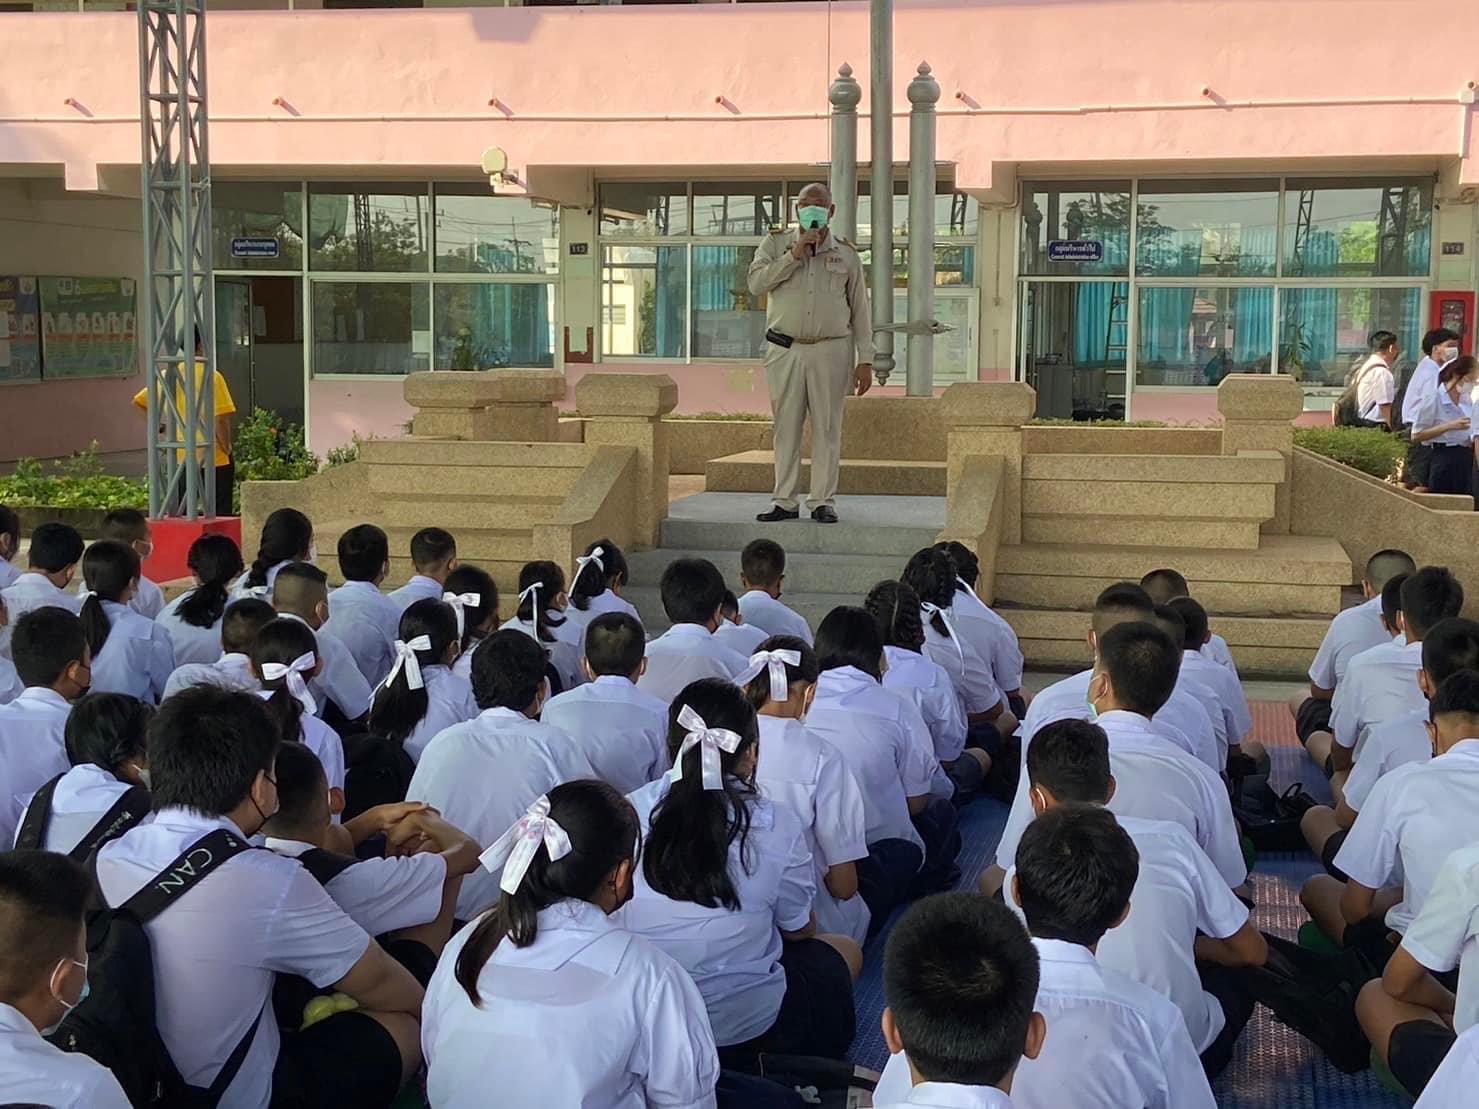 ผู้อำนวยการโรงเรียนสมุทรสาครวุฒิชัย พบปะกับนักเรียนในวันเปิดภาคเรียนที่ 1 ปีการศึกษา 2566